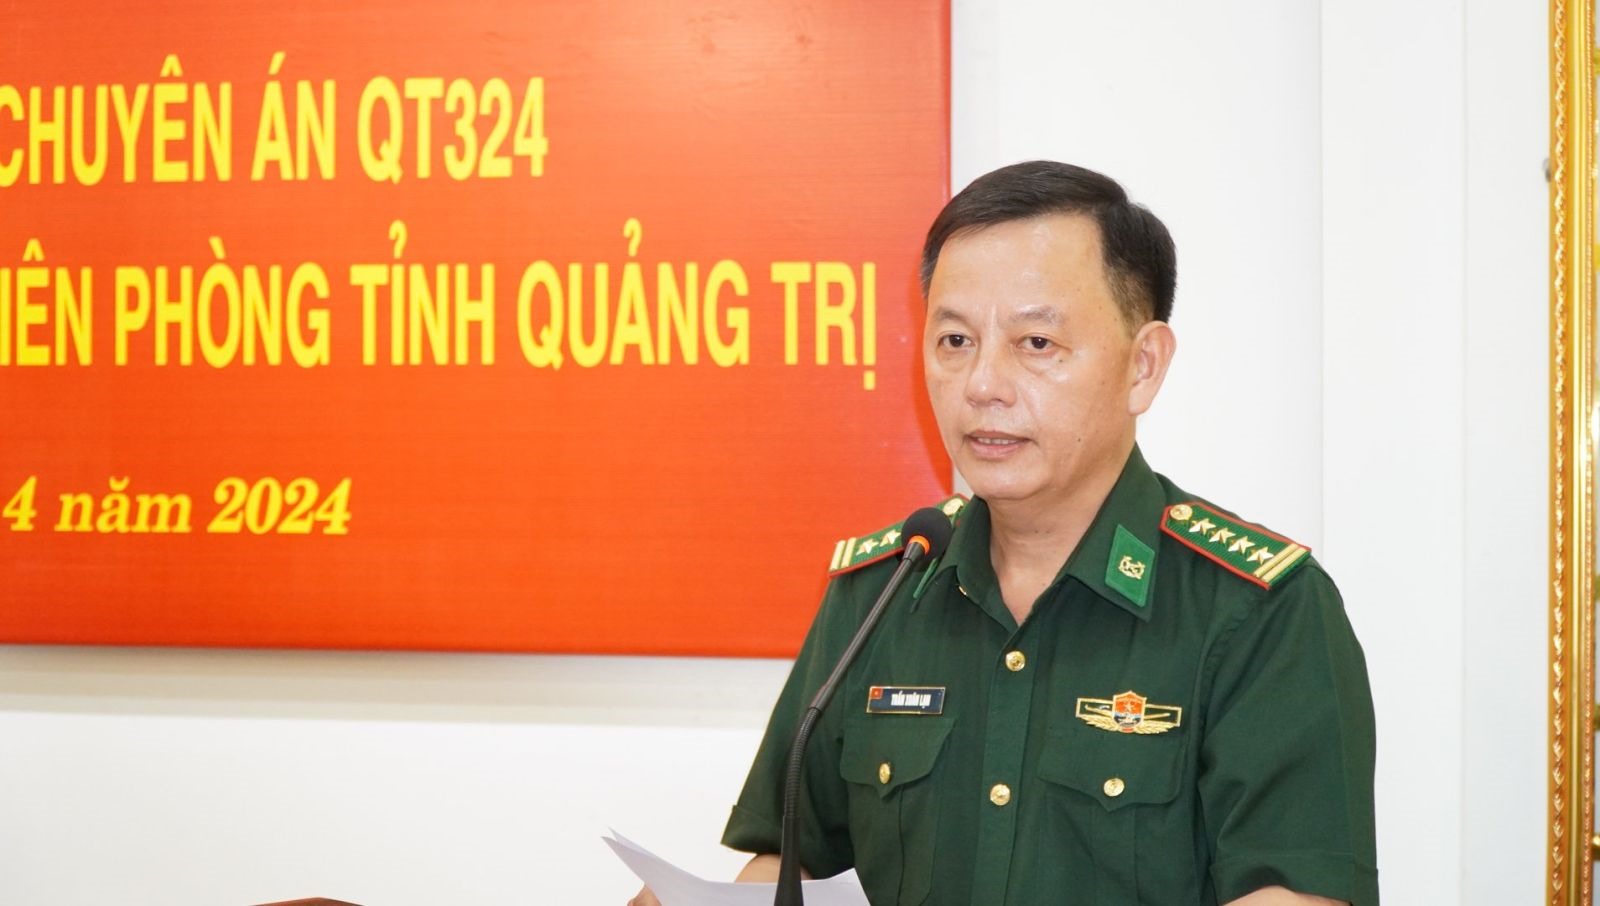 Đại tá Trần Xuân Lạn – Phó Chỉ huy trưởng BĐBP Quảng Trị báo cáo tóm tắt quà trình thực hiện chuyên án.